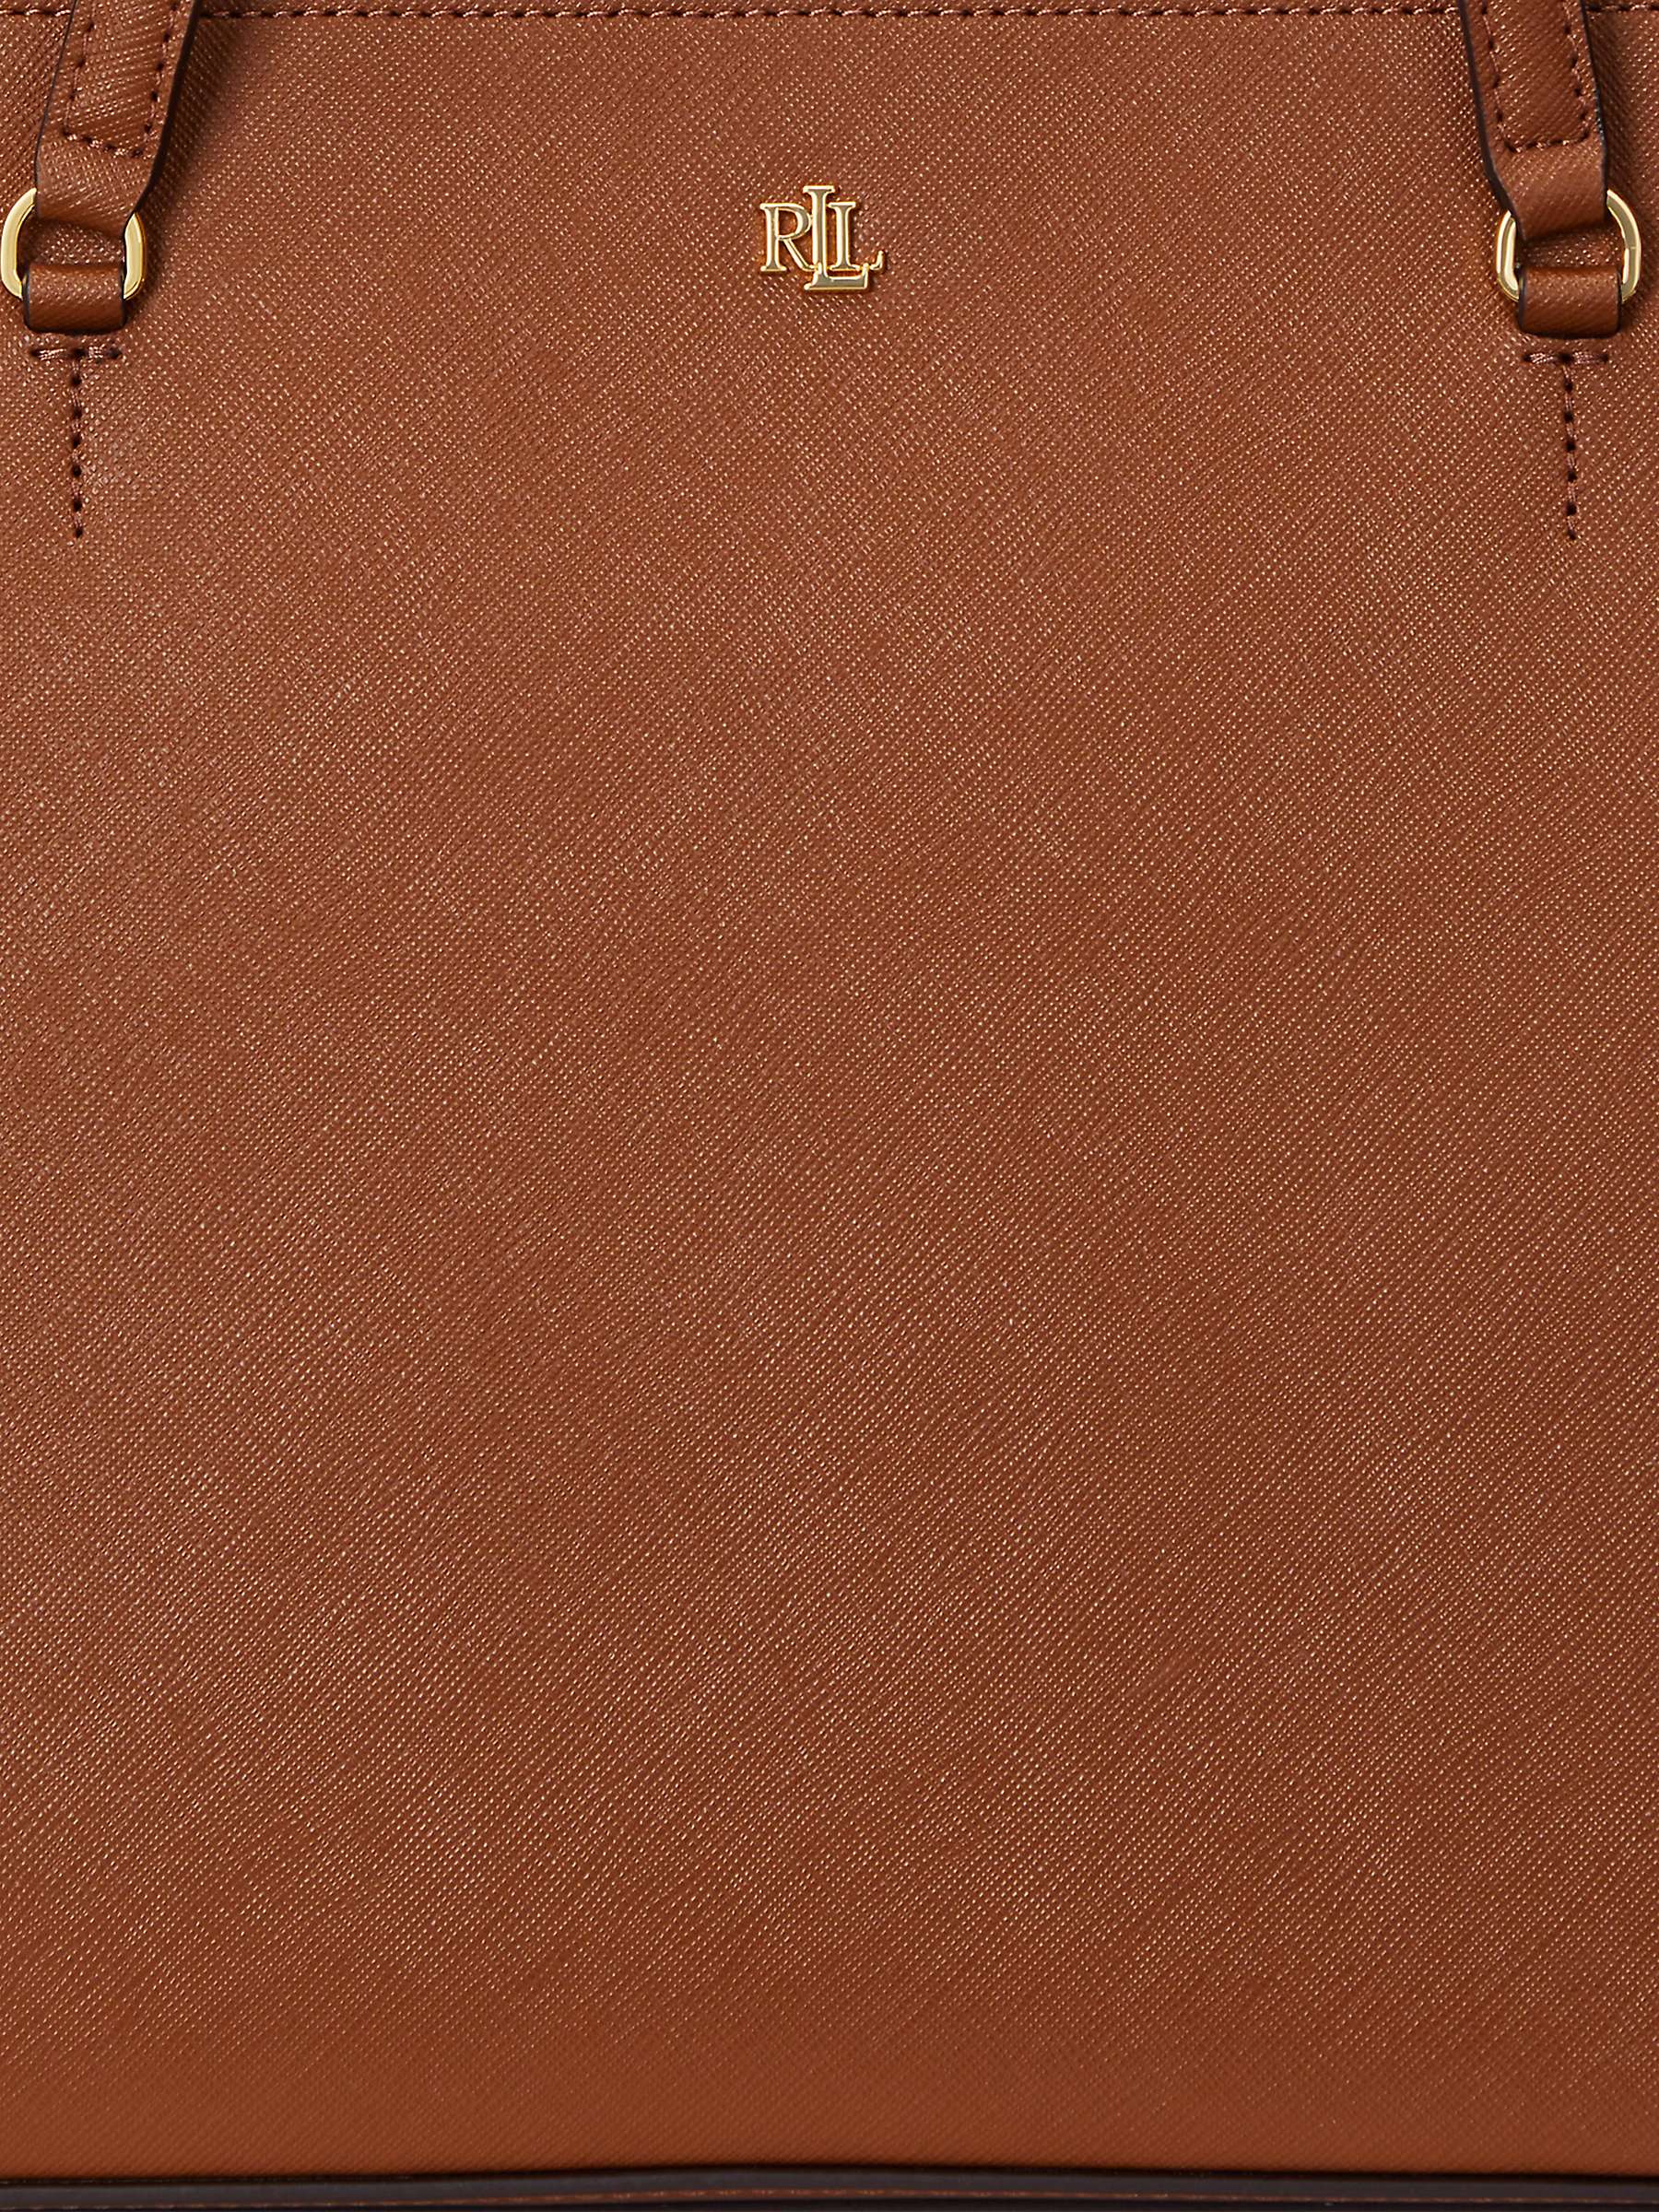 Buy Ralph Lauren Lauren Ralph Lauren Karly Crosshatch Leather Tote Online at johnlewis.com